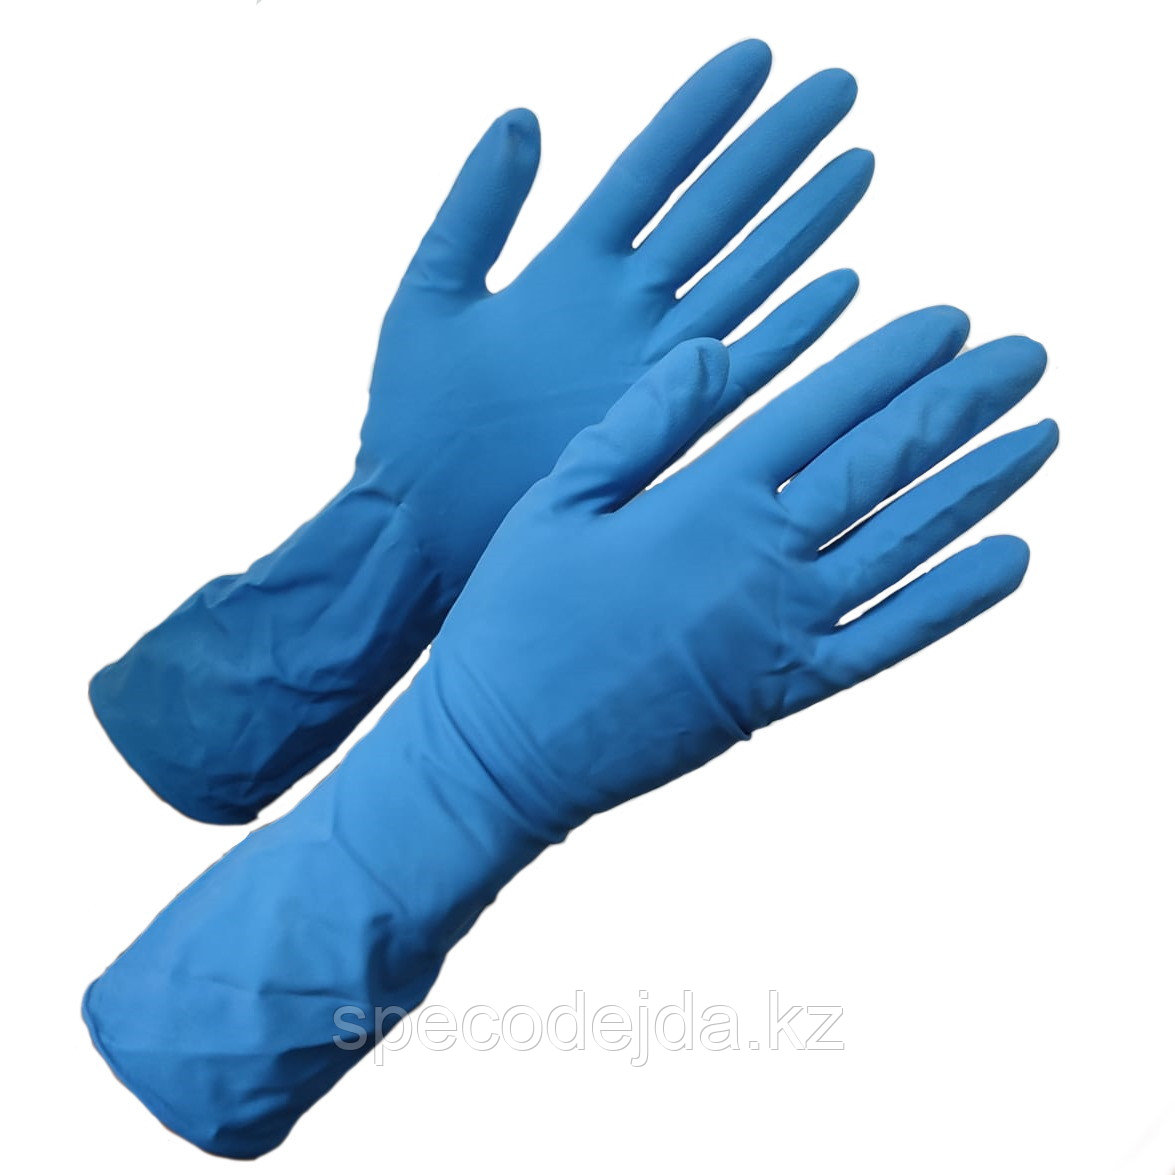 Высокопрочные латексные перчатки с ндс